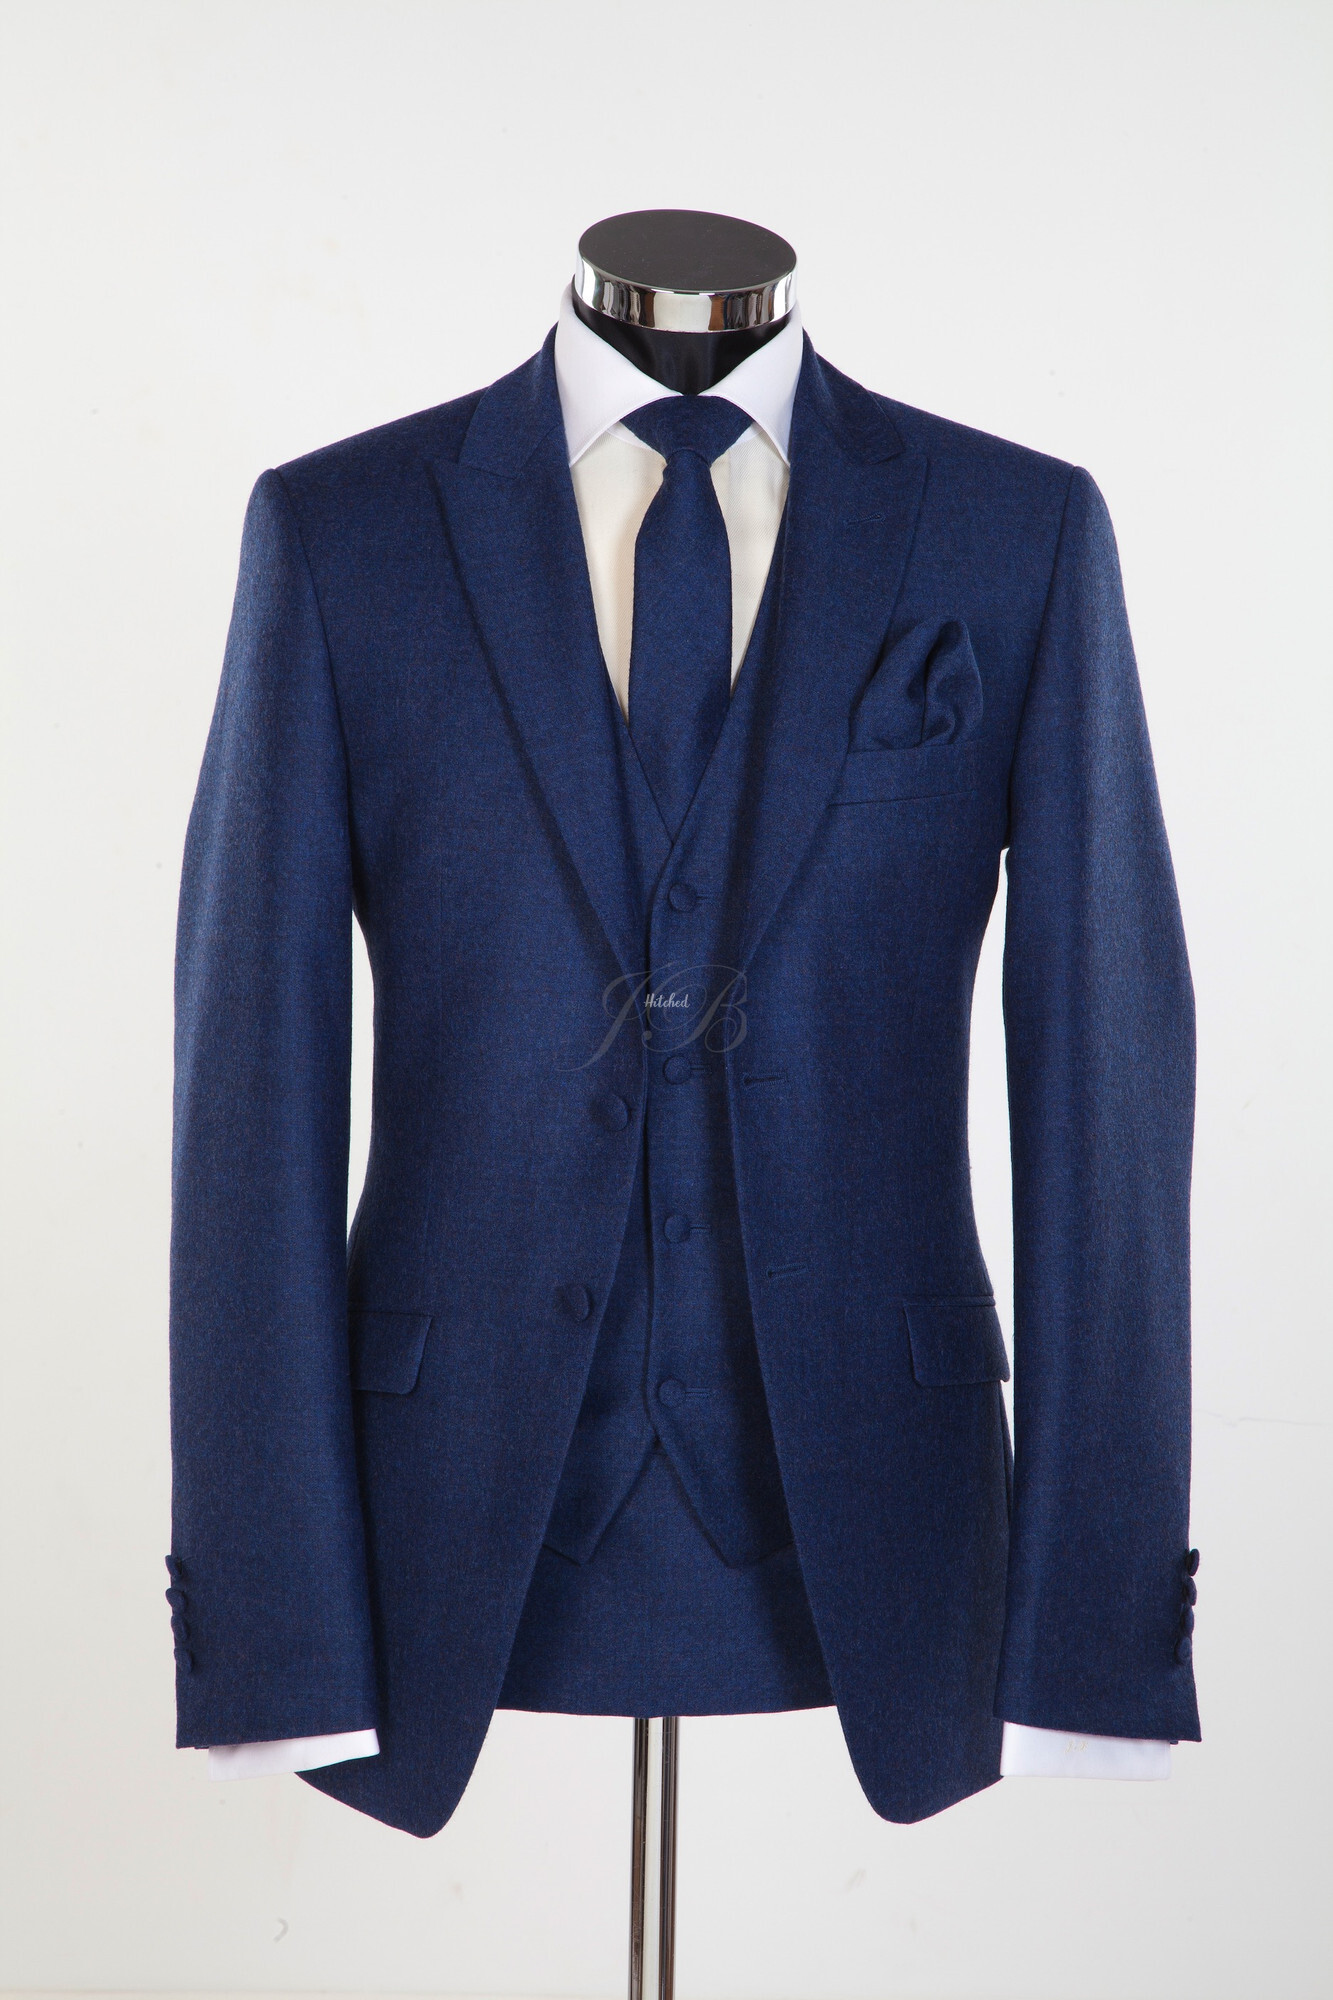 Newbury - Flannel Wool Slim Fitting Wedding Suit in Blue 2 Mens Wedding ...